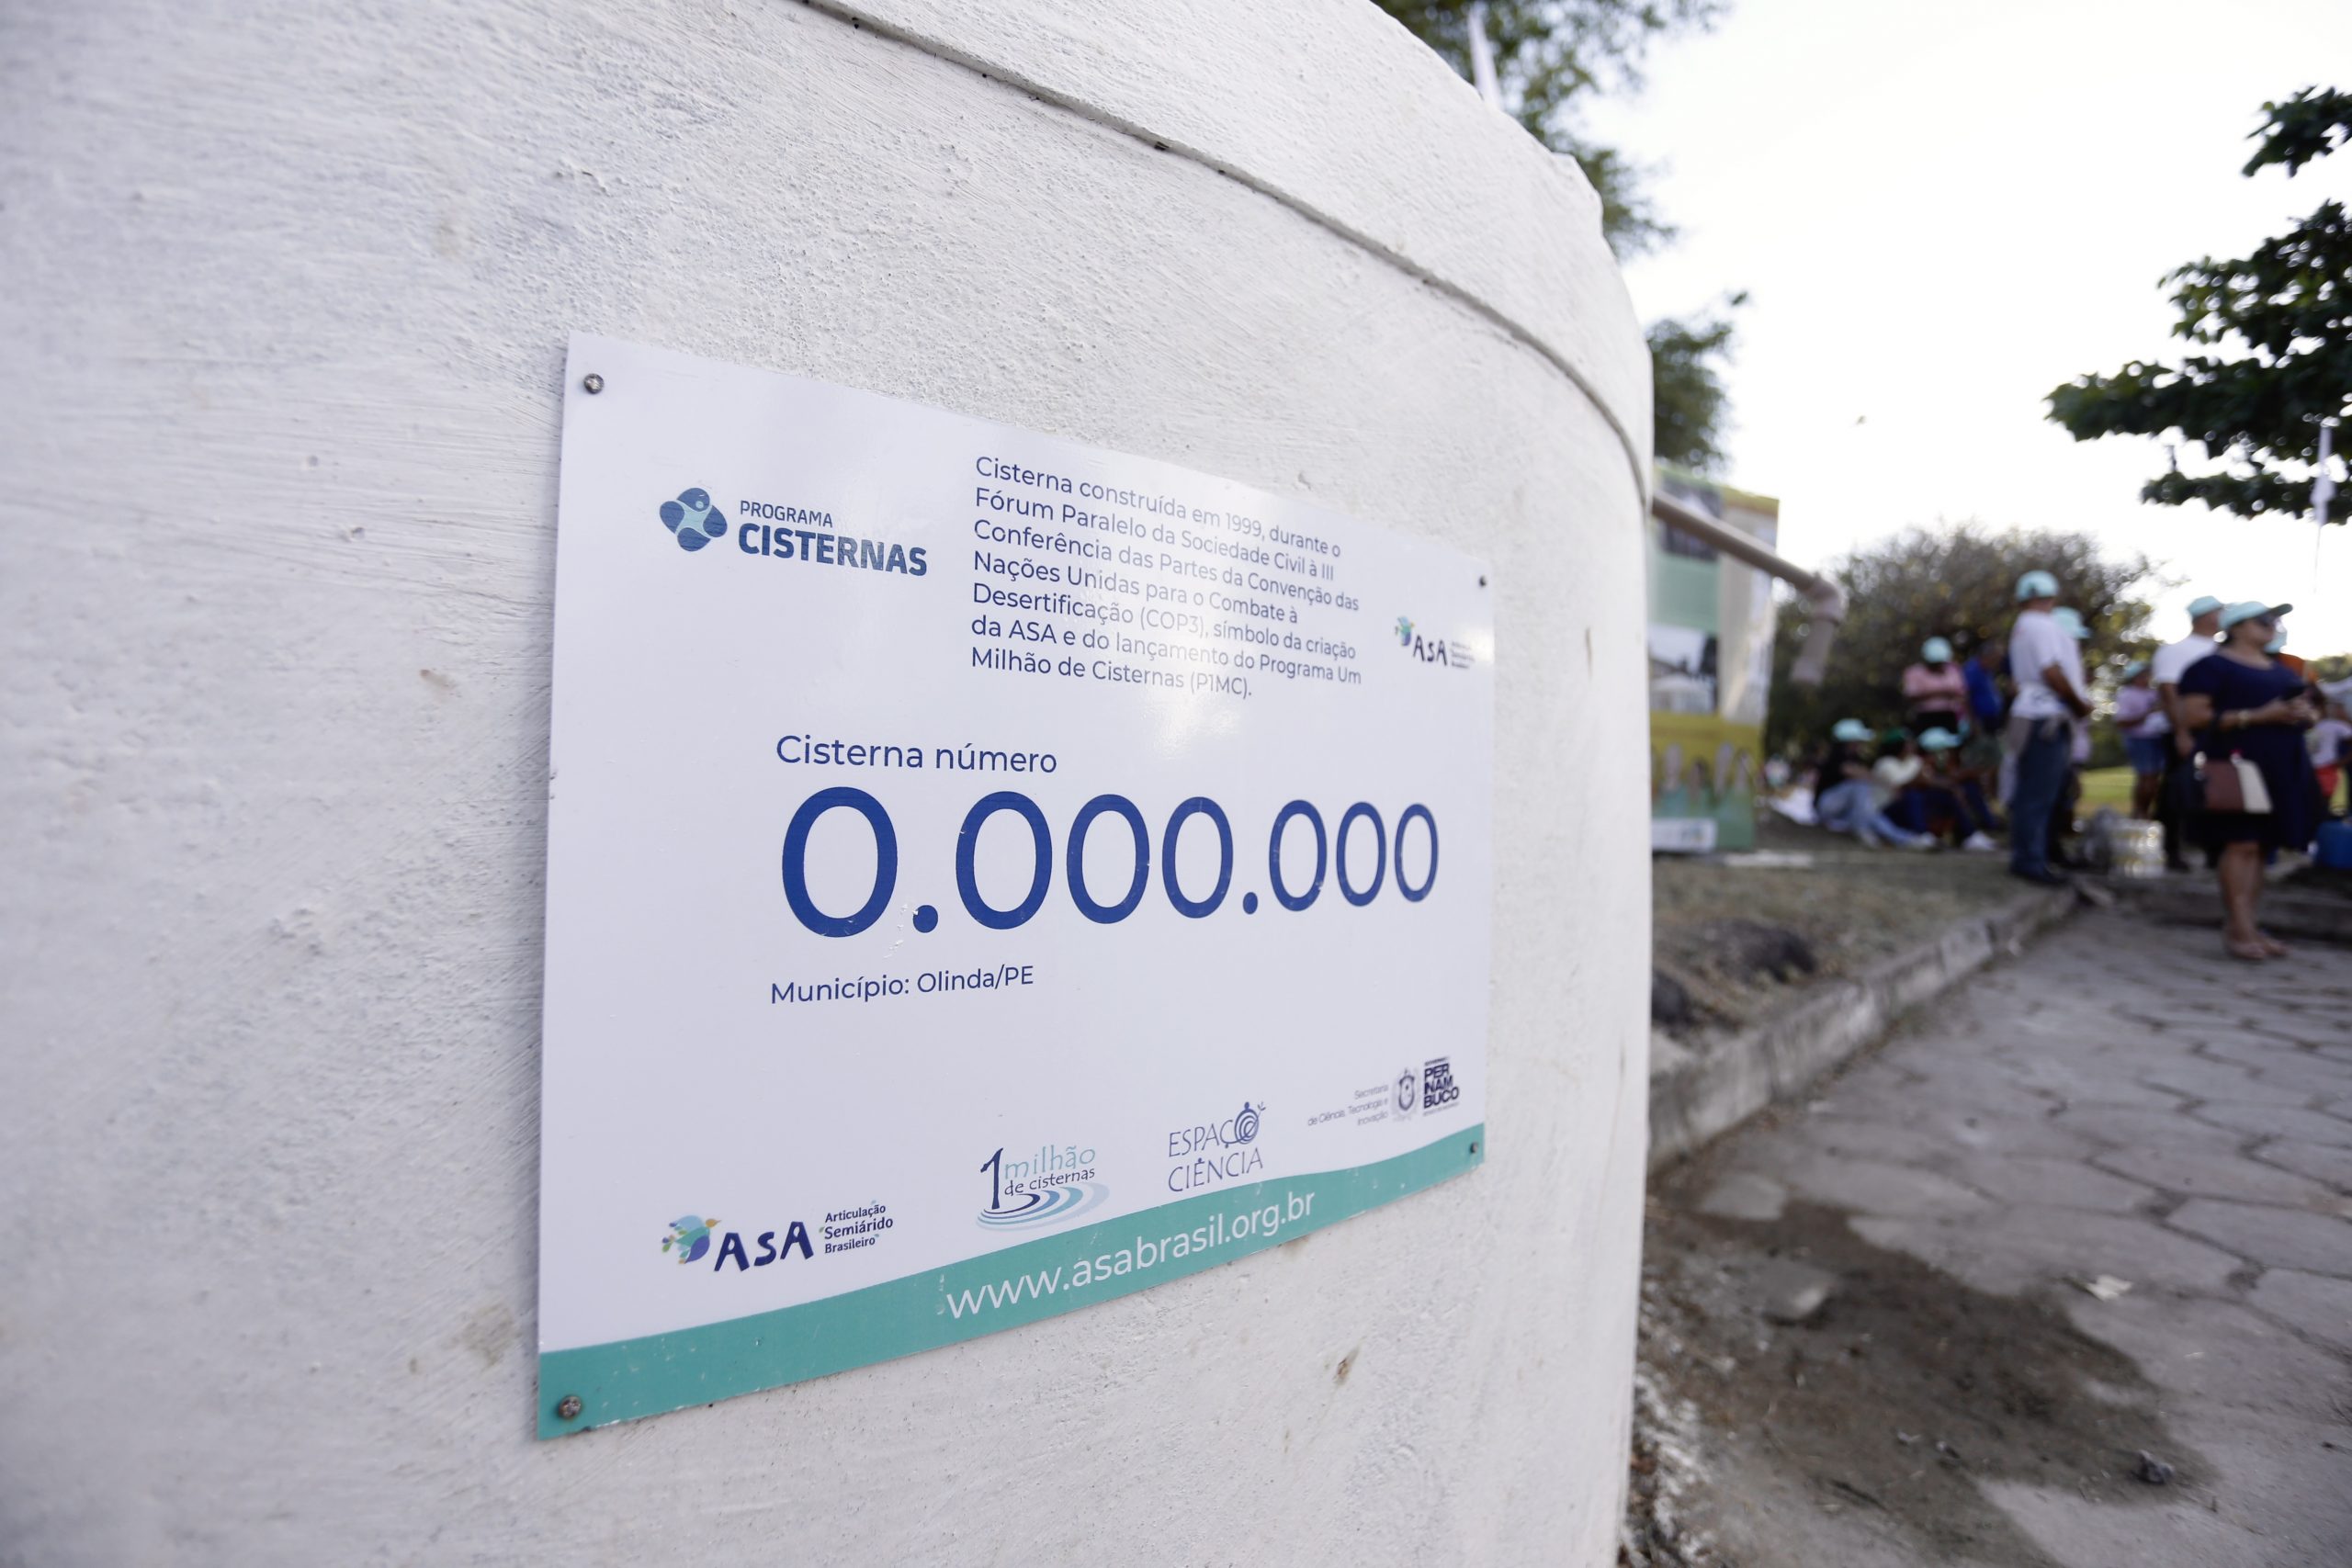 Foto colorida de detalhe de cisterna de cor branca, com placa do Programa Um Milhão de Cisternas indicando o número 0.000.000